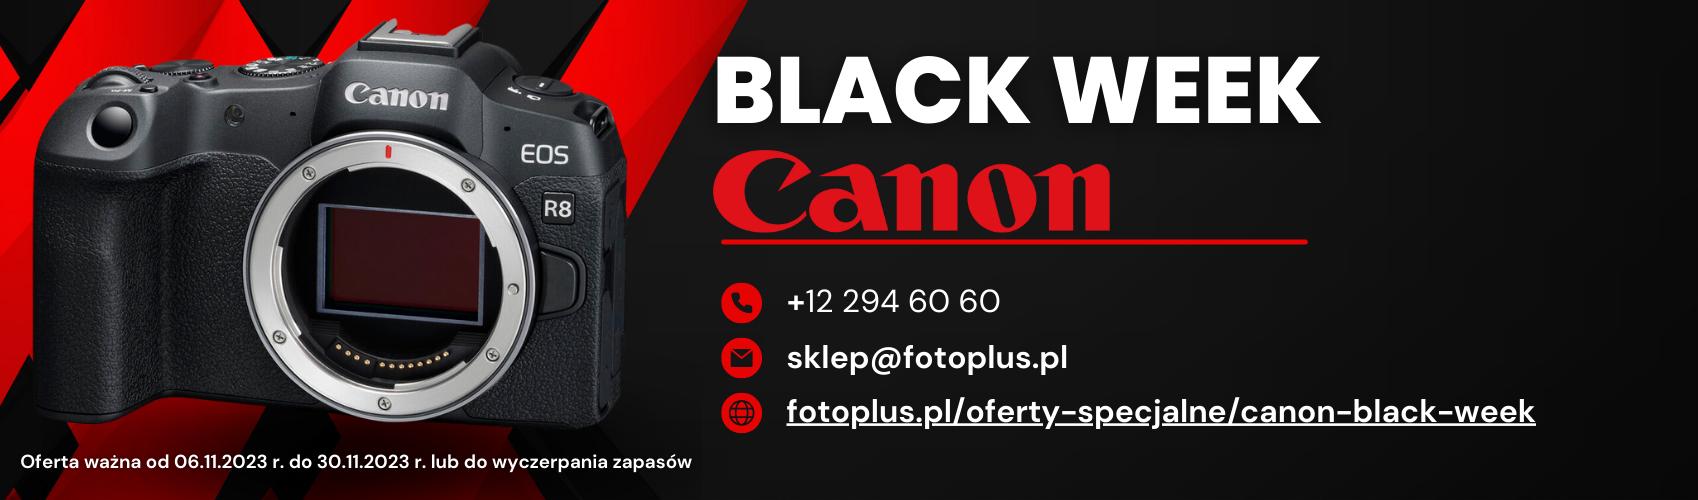 Black Friday już za rogiem! Z tej okazji przygotowaliśmy dla Was specjalną ofertę na produkty Canon. Sprawdź już teraz!